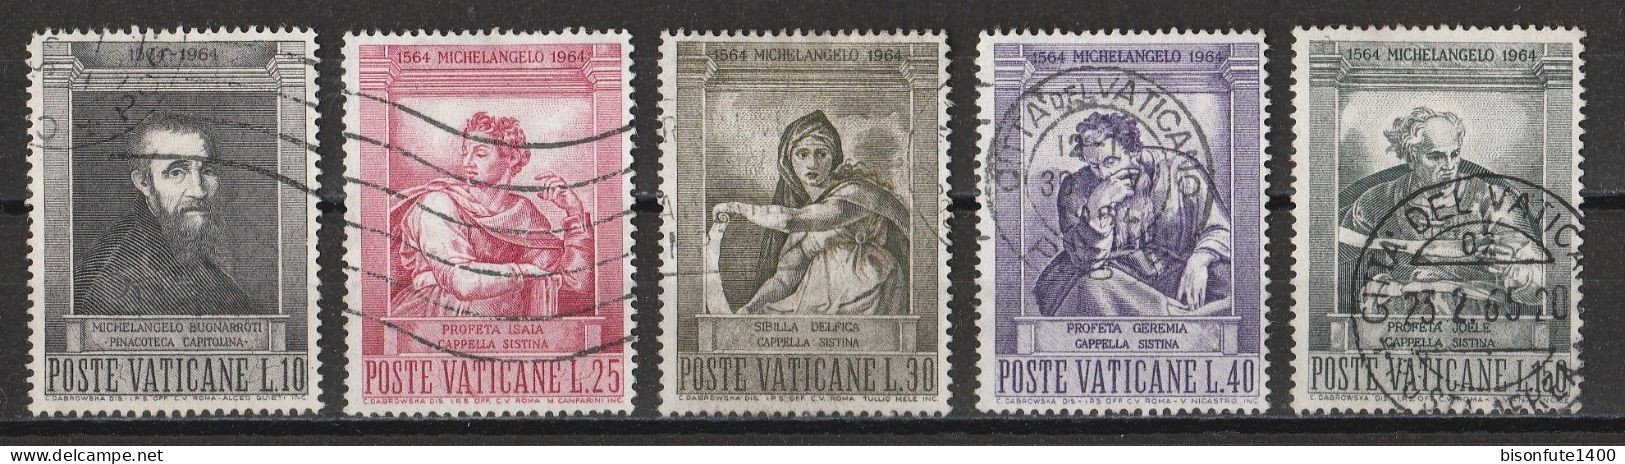 Vatican 1964 : Timbres Yvert & Tellier N° 405 - 406 - 407 - 408 - 409 - 410 - 411 - 412 - 413 Et 414 Oblitérés. - Gebruikt